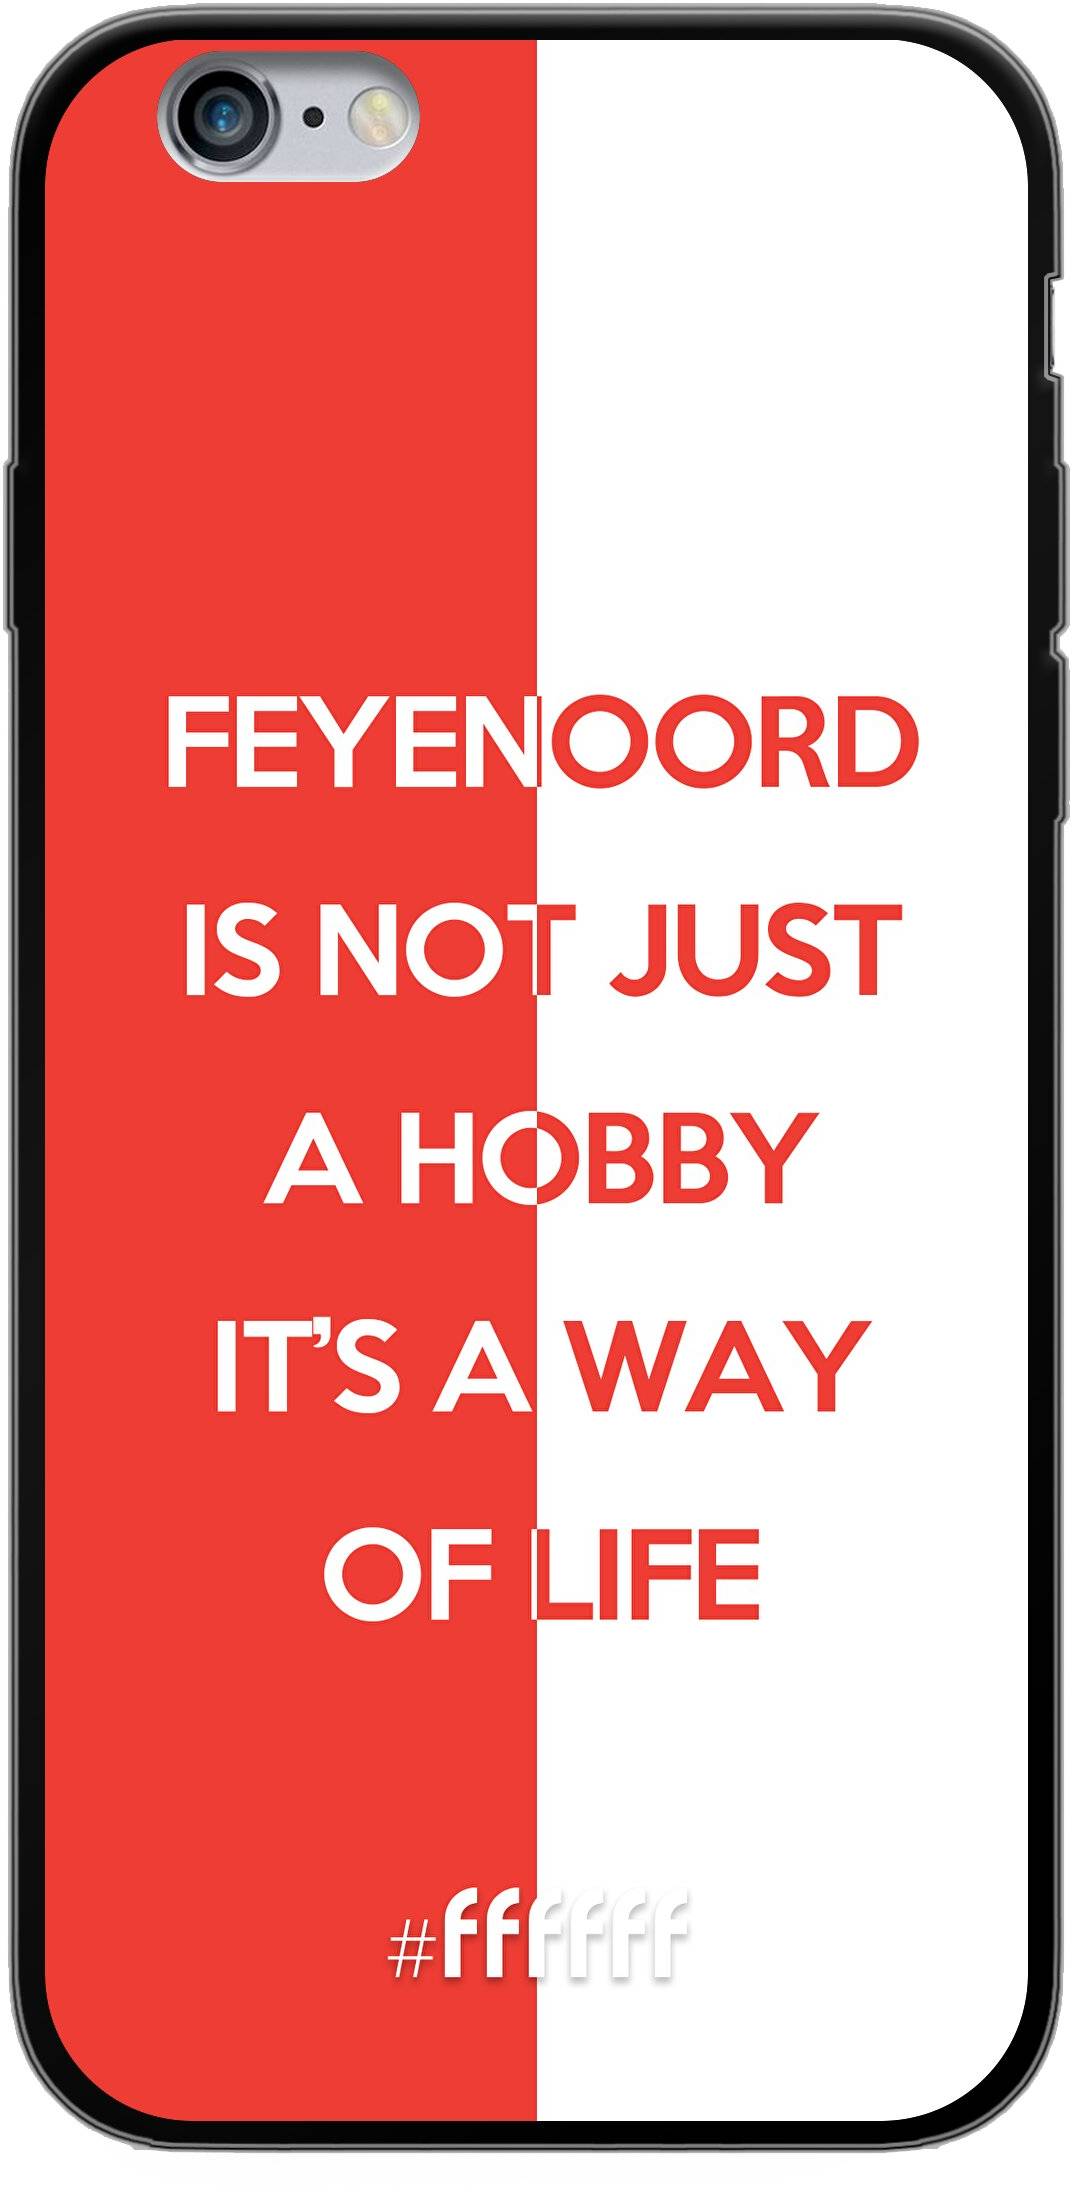 Feyenoord - Way of life iPhone 6